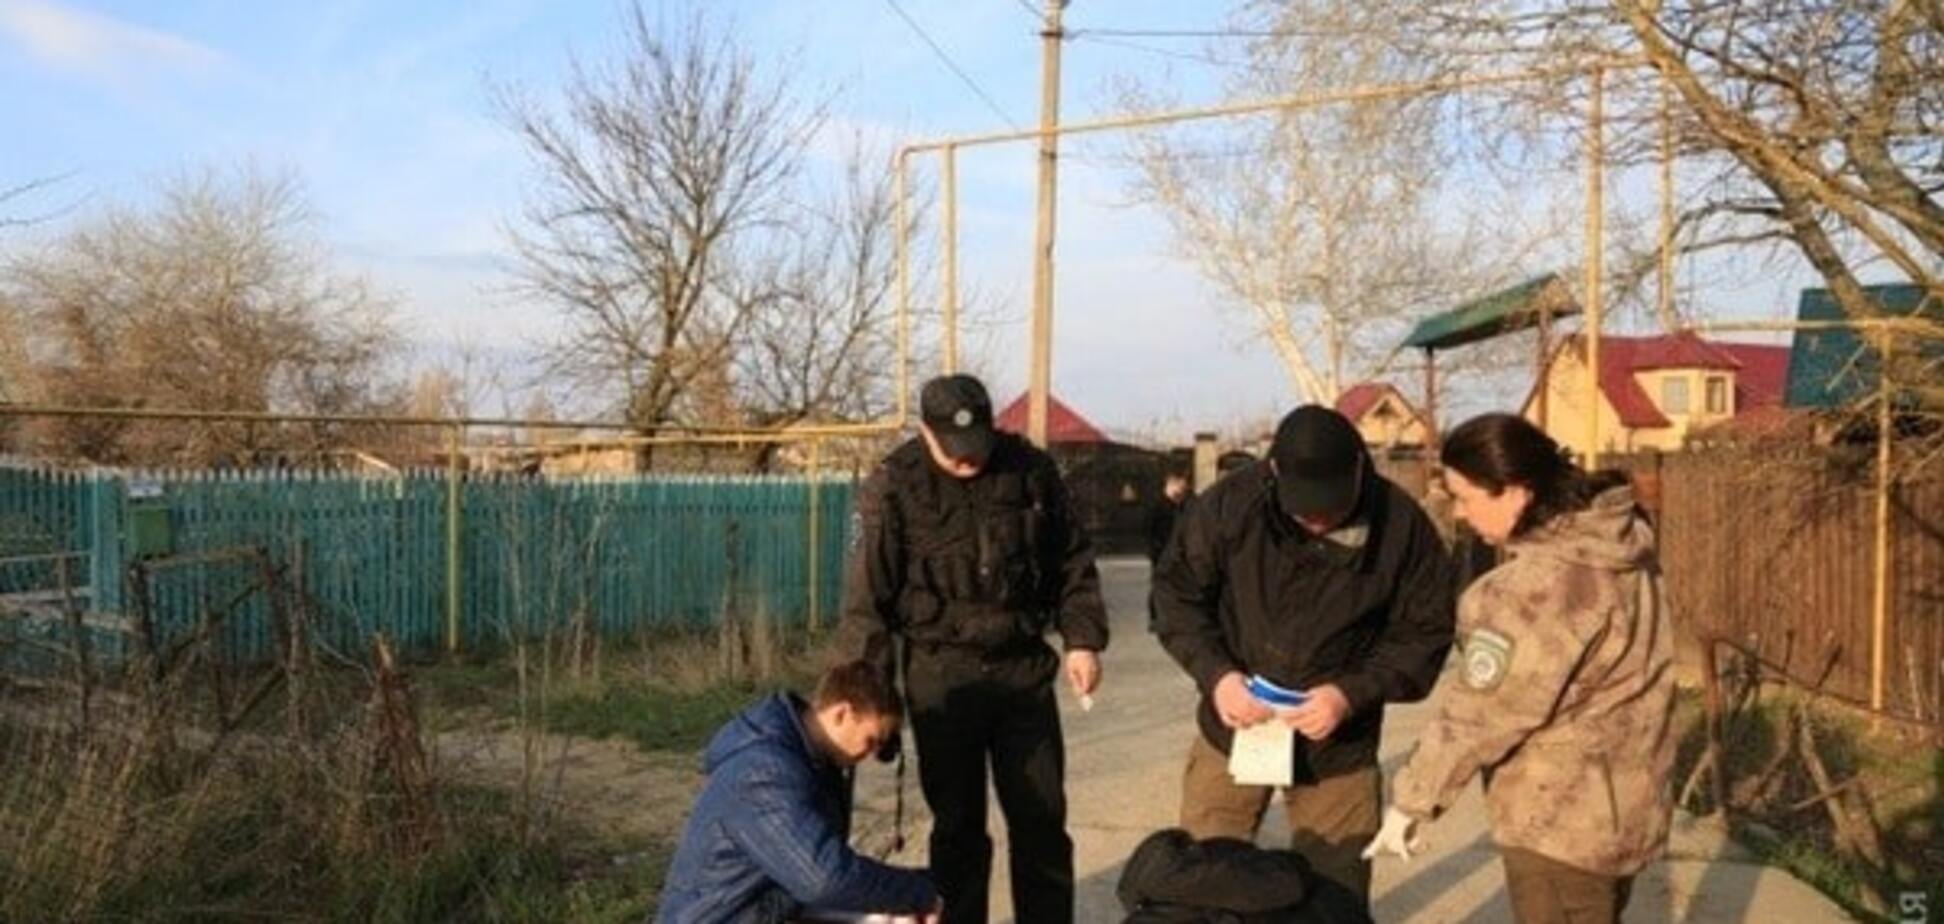 Вбивство екс-депутата під Одесою: кілери діяли за планом